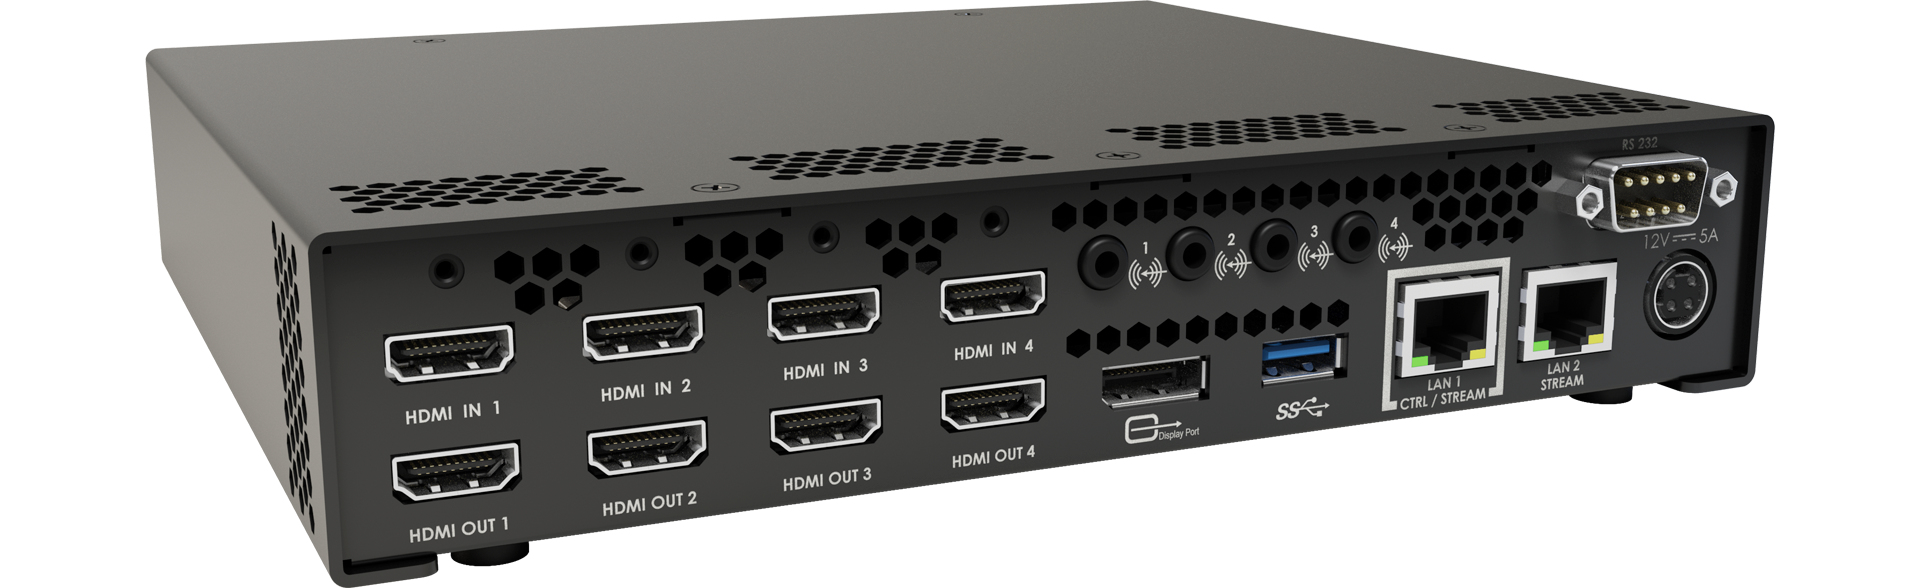 Matrox Maevex 6152 Quad 4K Encoder Box 4x HDMI (MVX-E6152-4)